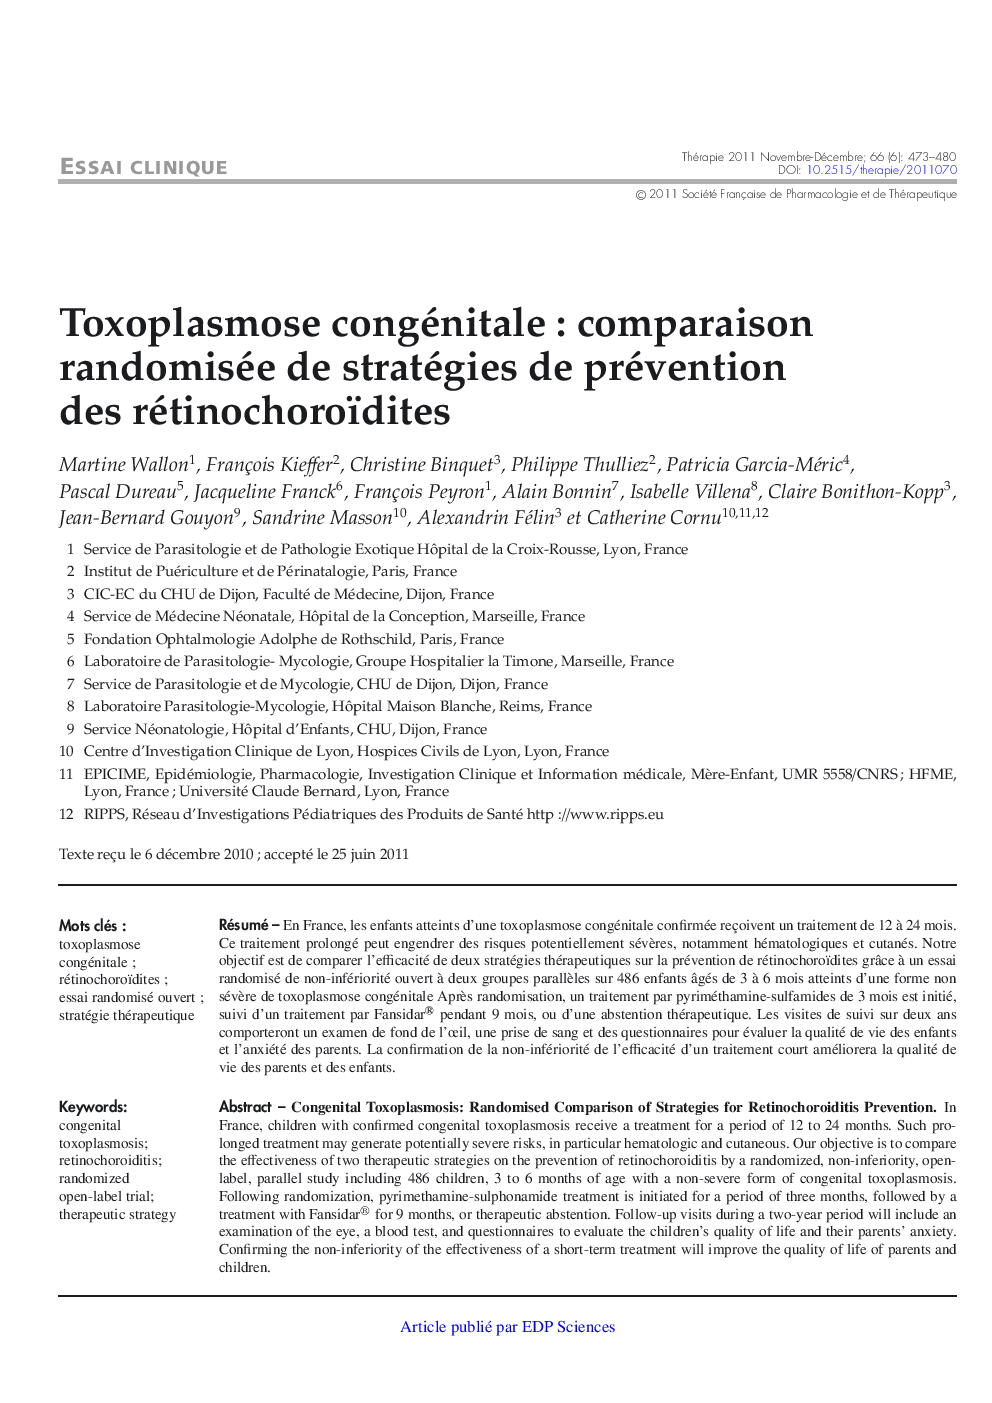 Toxoplasmose congénitale : comparaison randomisée de stratégies de prévention des rétinochoroïdites